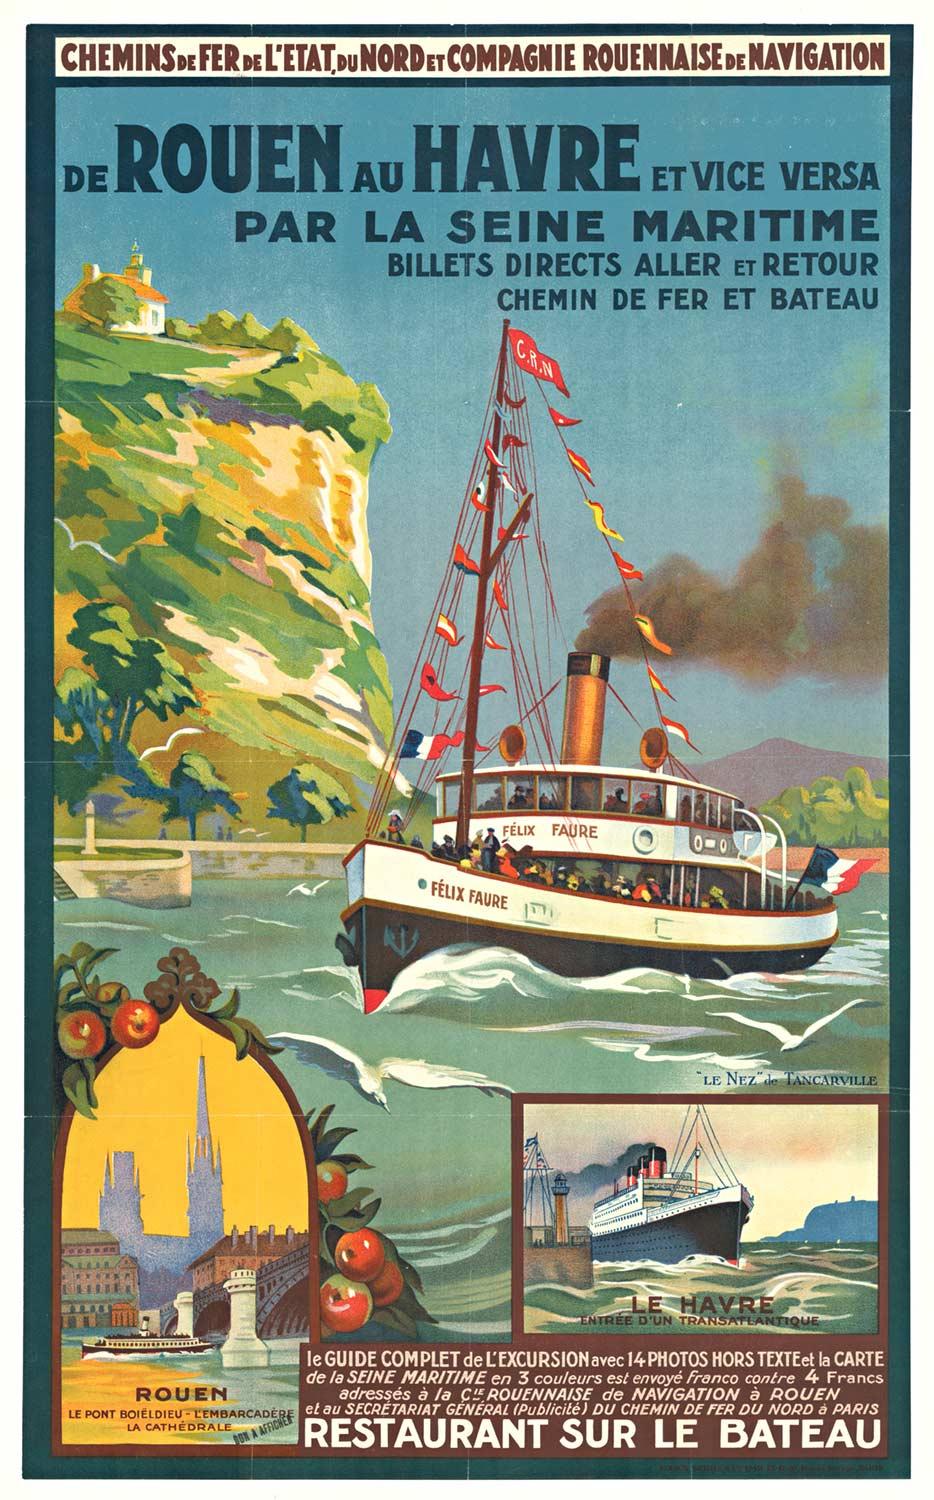 Unknown Print - Original "de Rouen au Havre' vintage travel by ship vintage poster